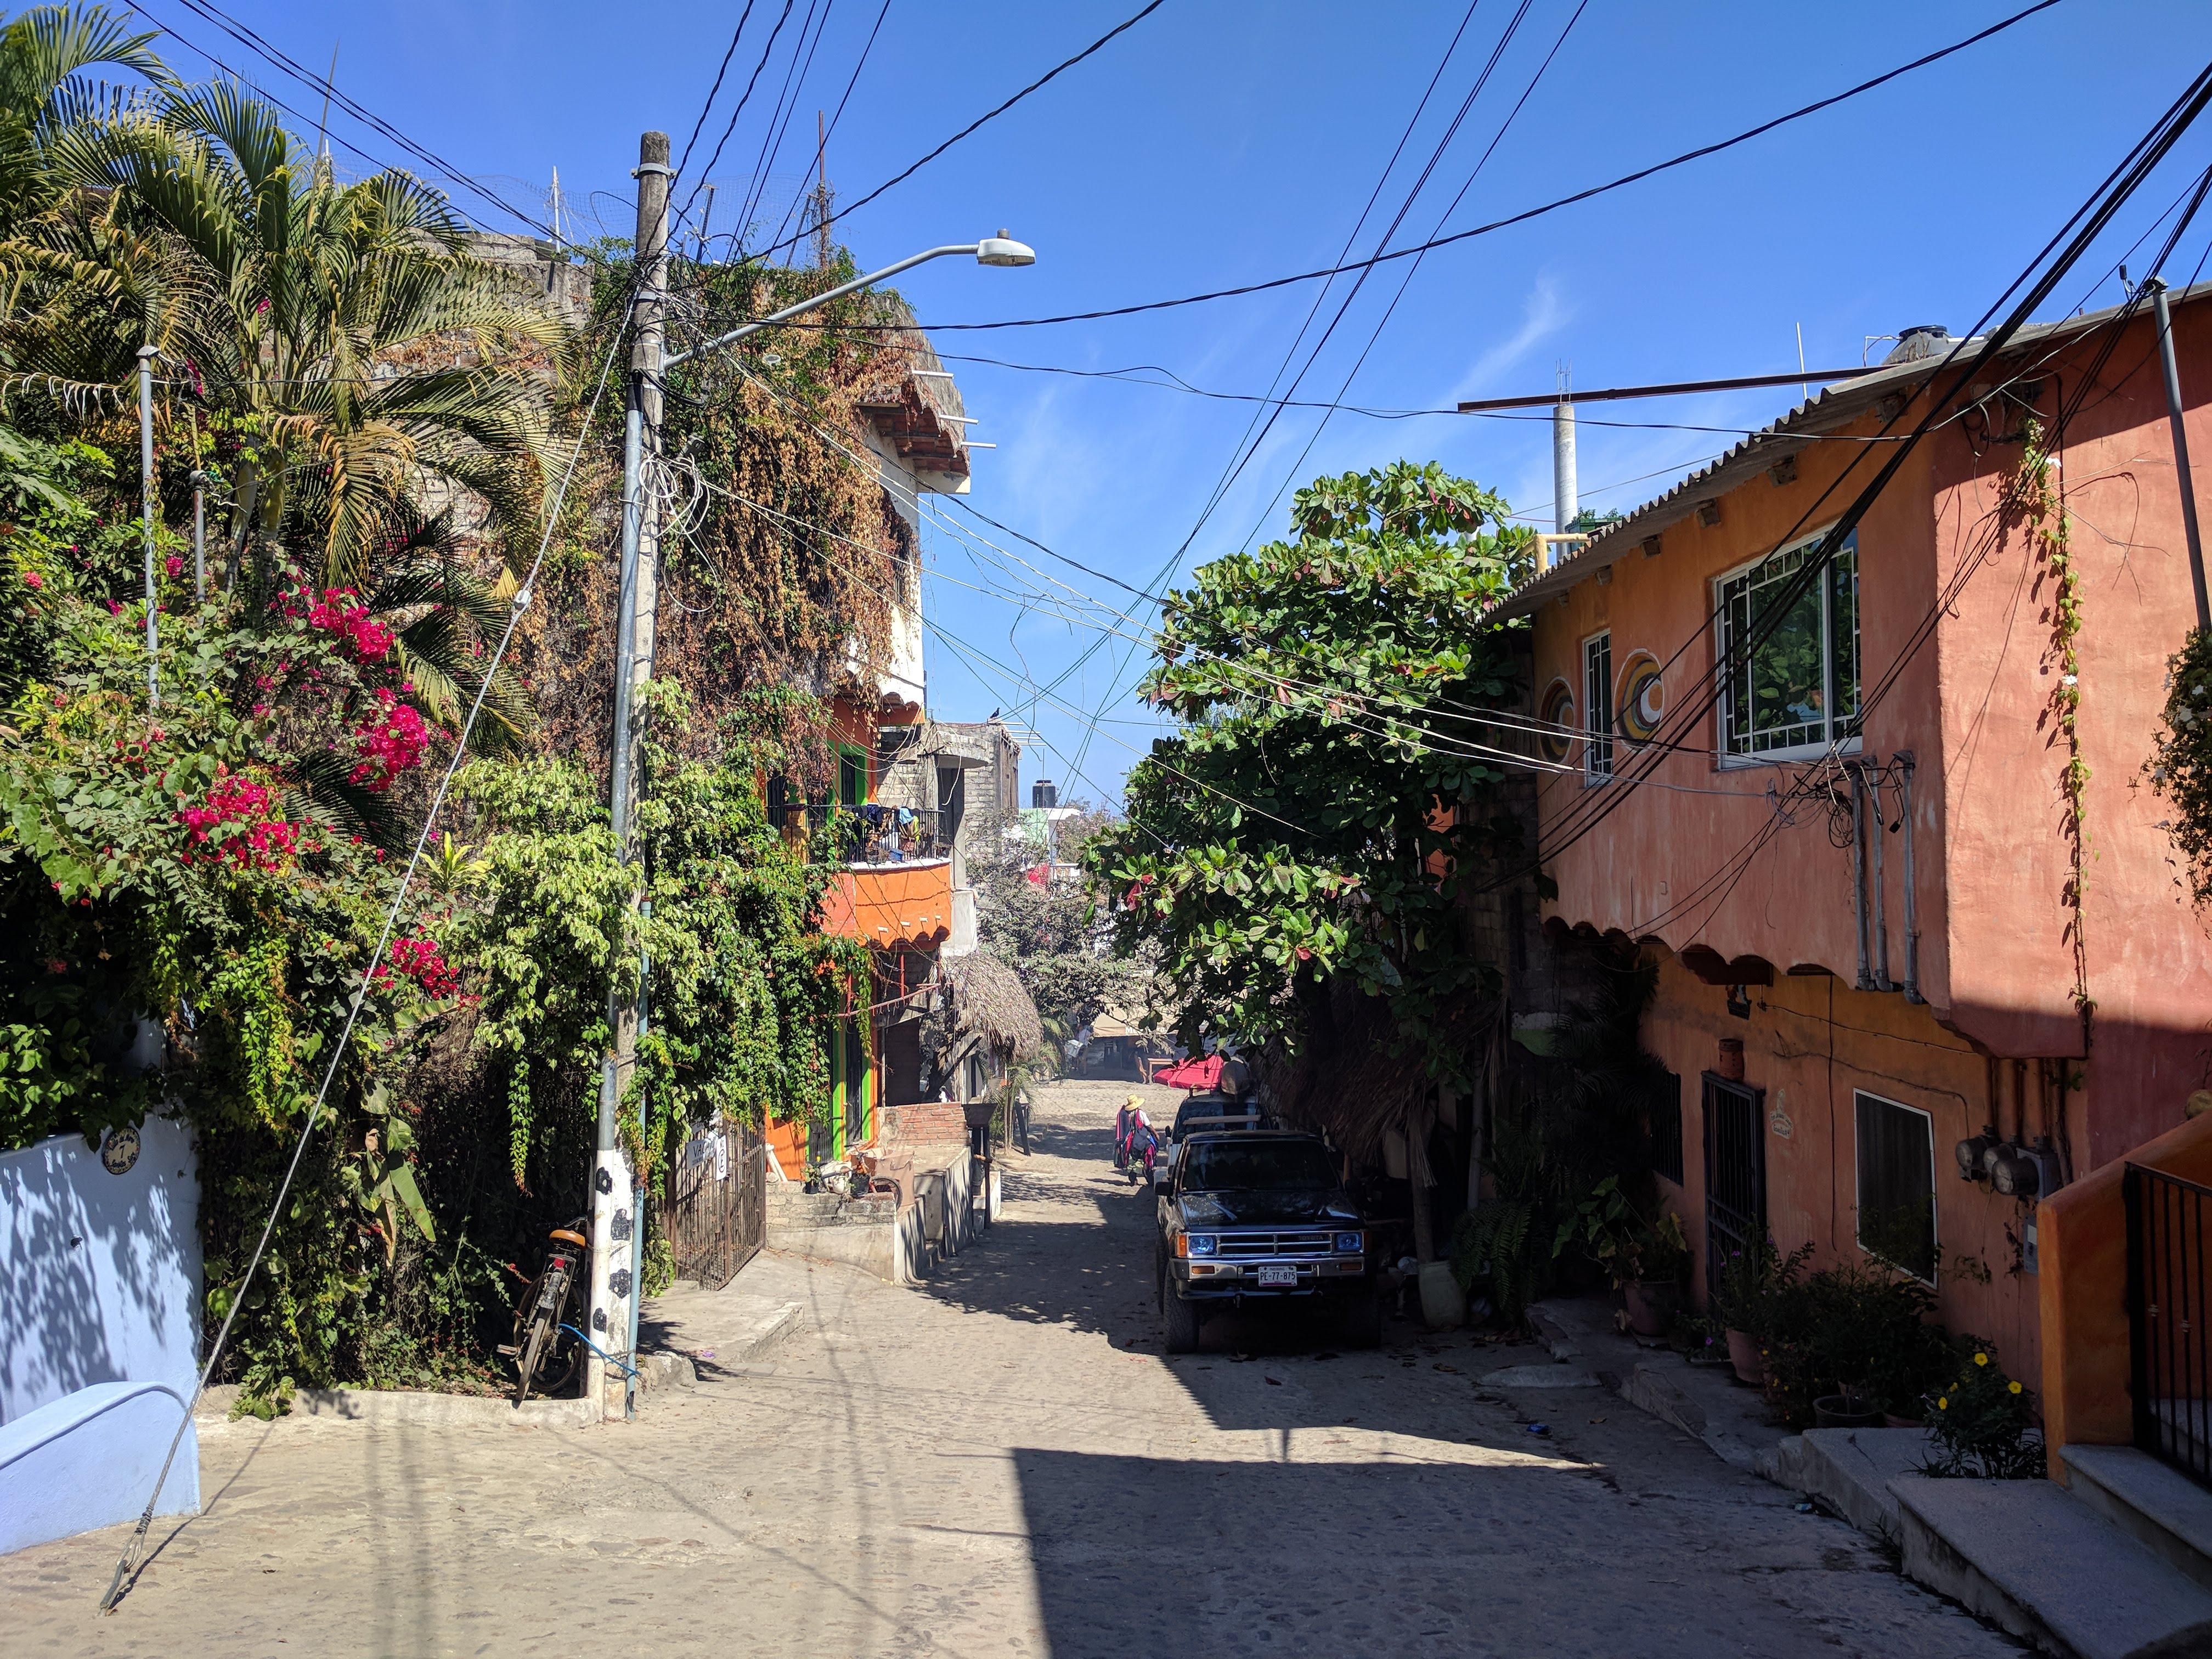 Street in Sayulita